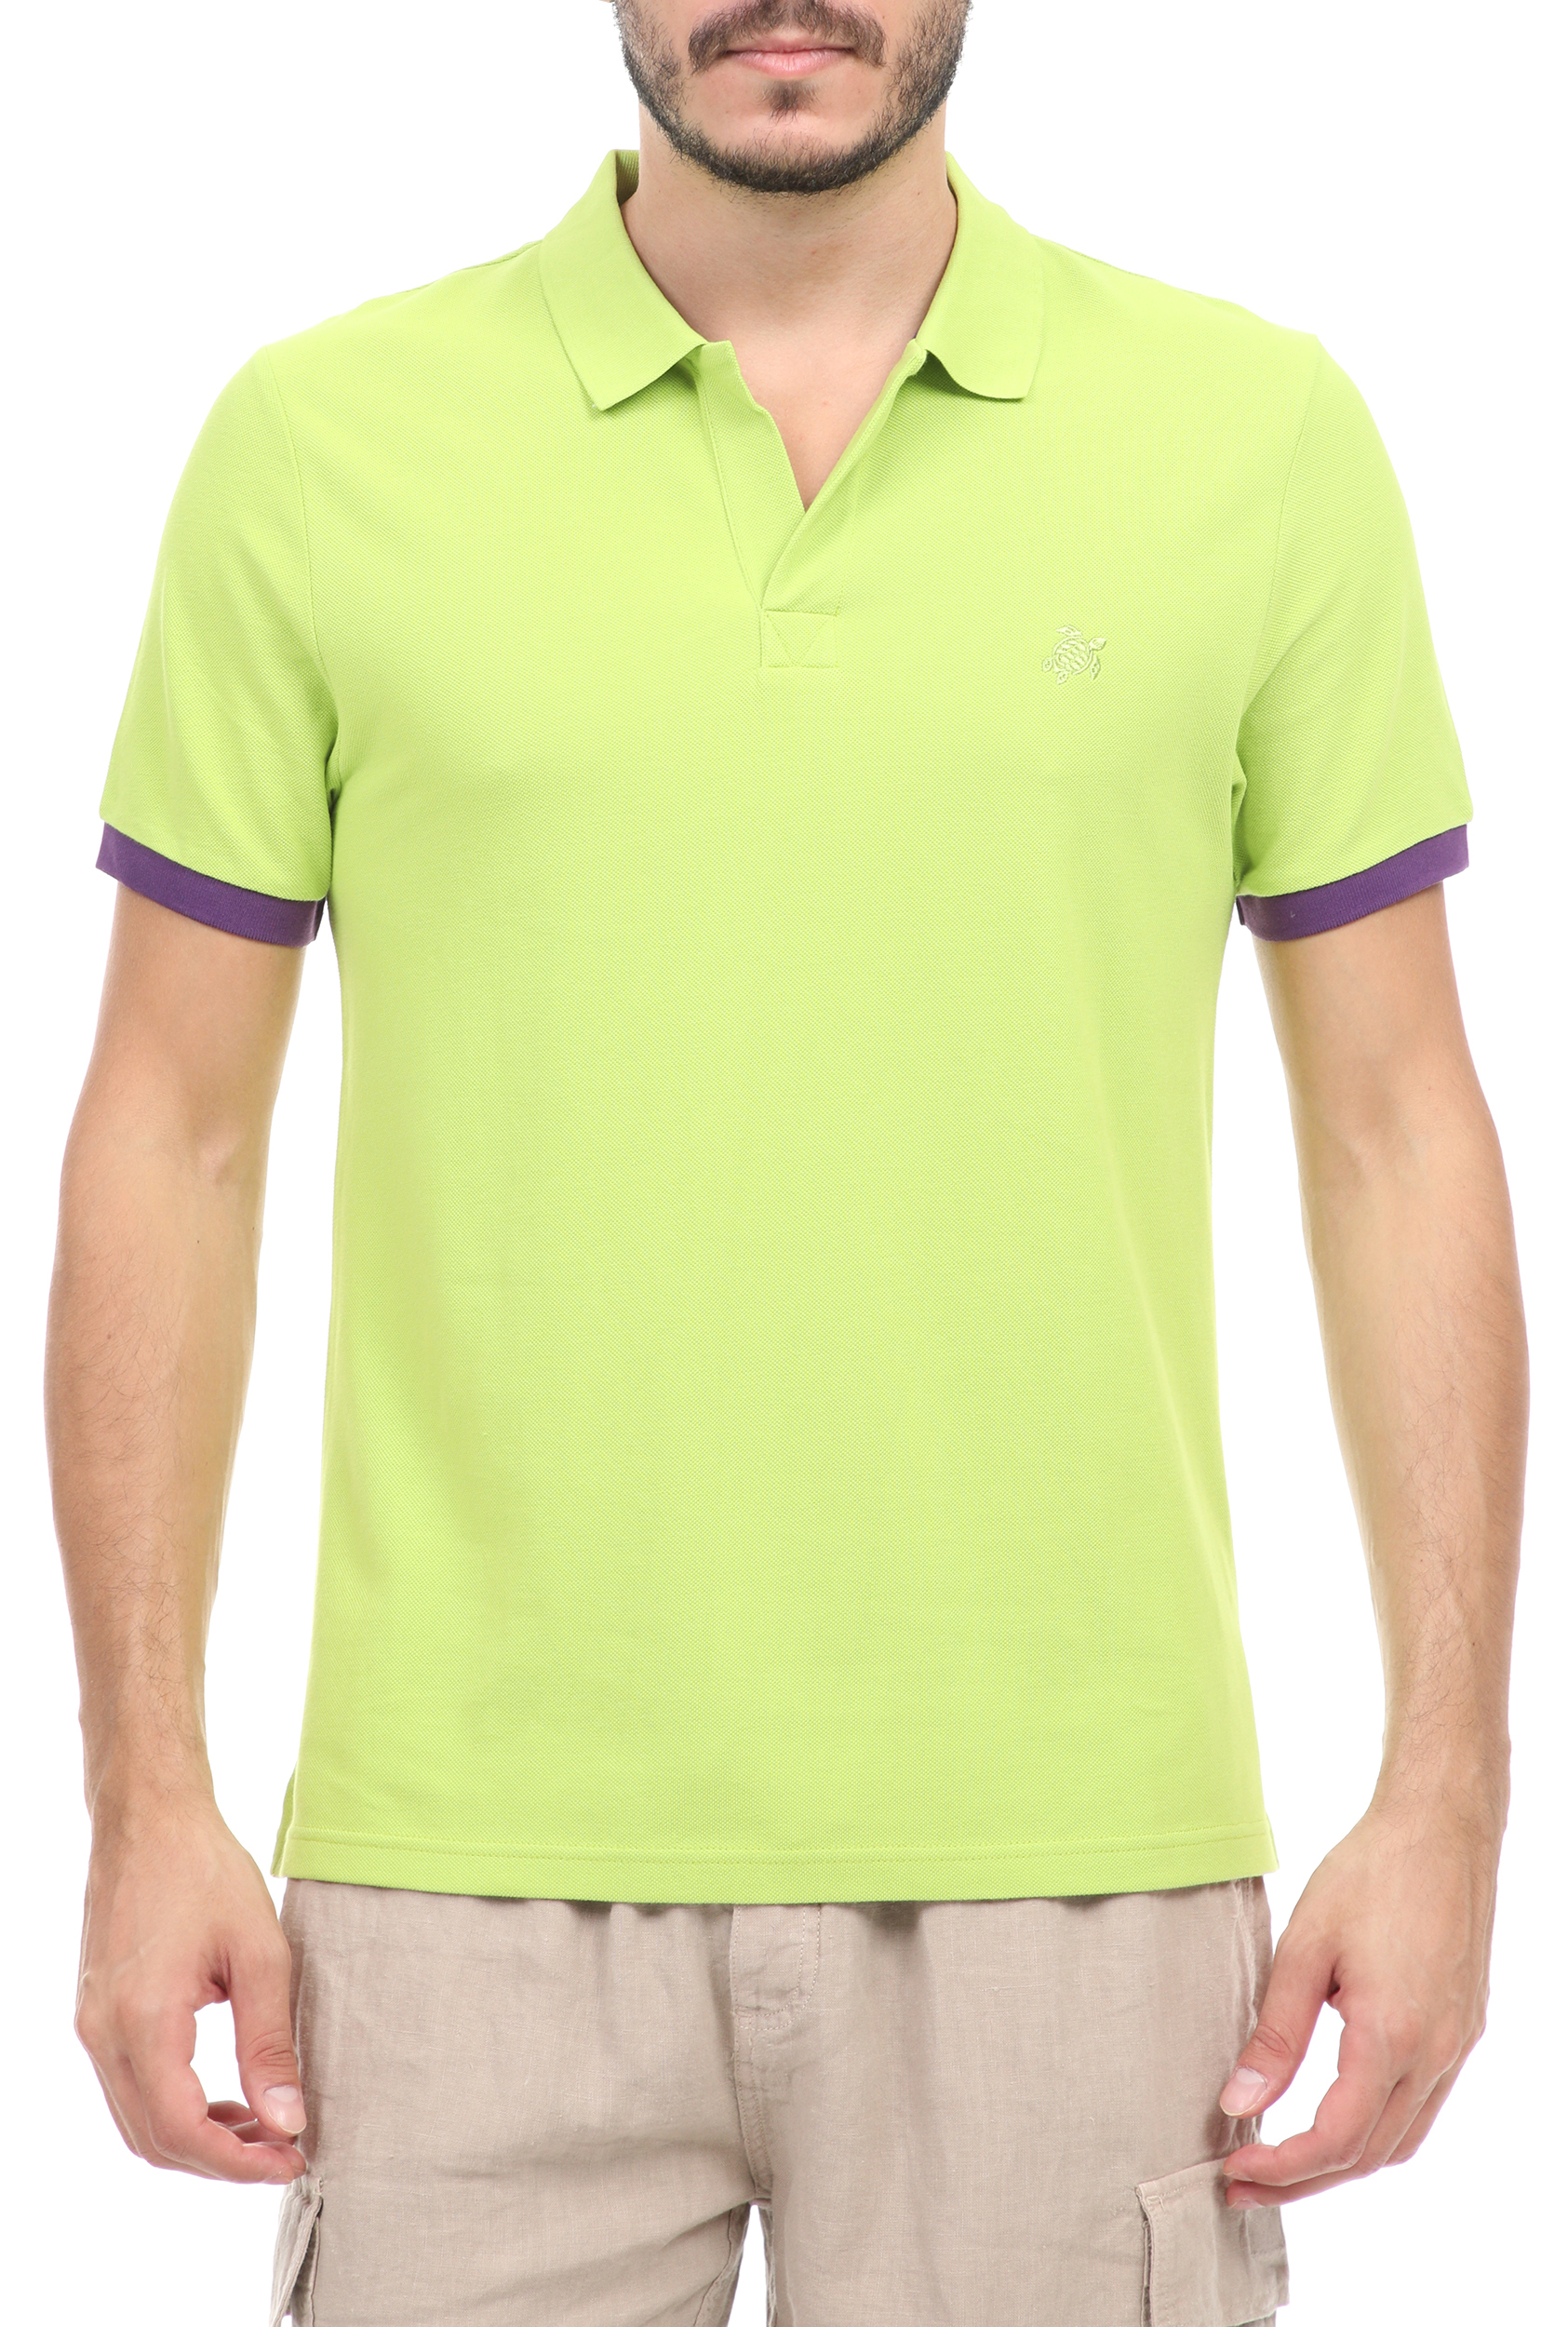 Ανδρικά/Ρούχα/Μπλούζες/Πόλο VILEBREQUIN - Ανδρική polo μπλούζα VILEBREQUIN PALATIN πράσινη μωβ